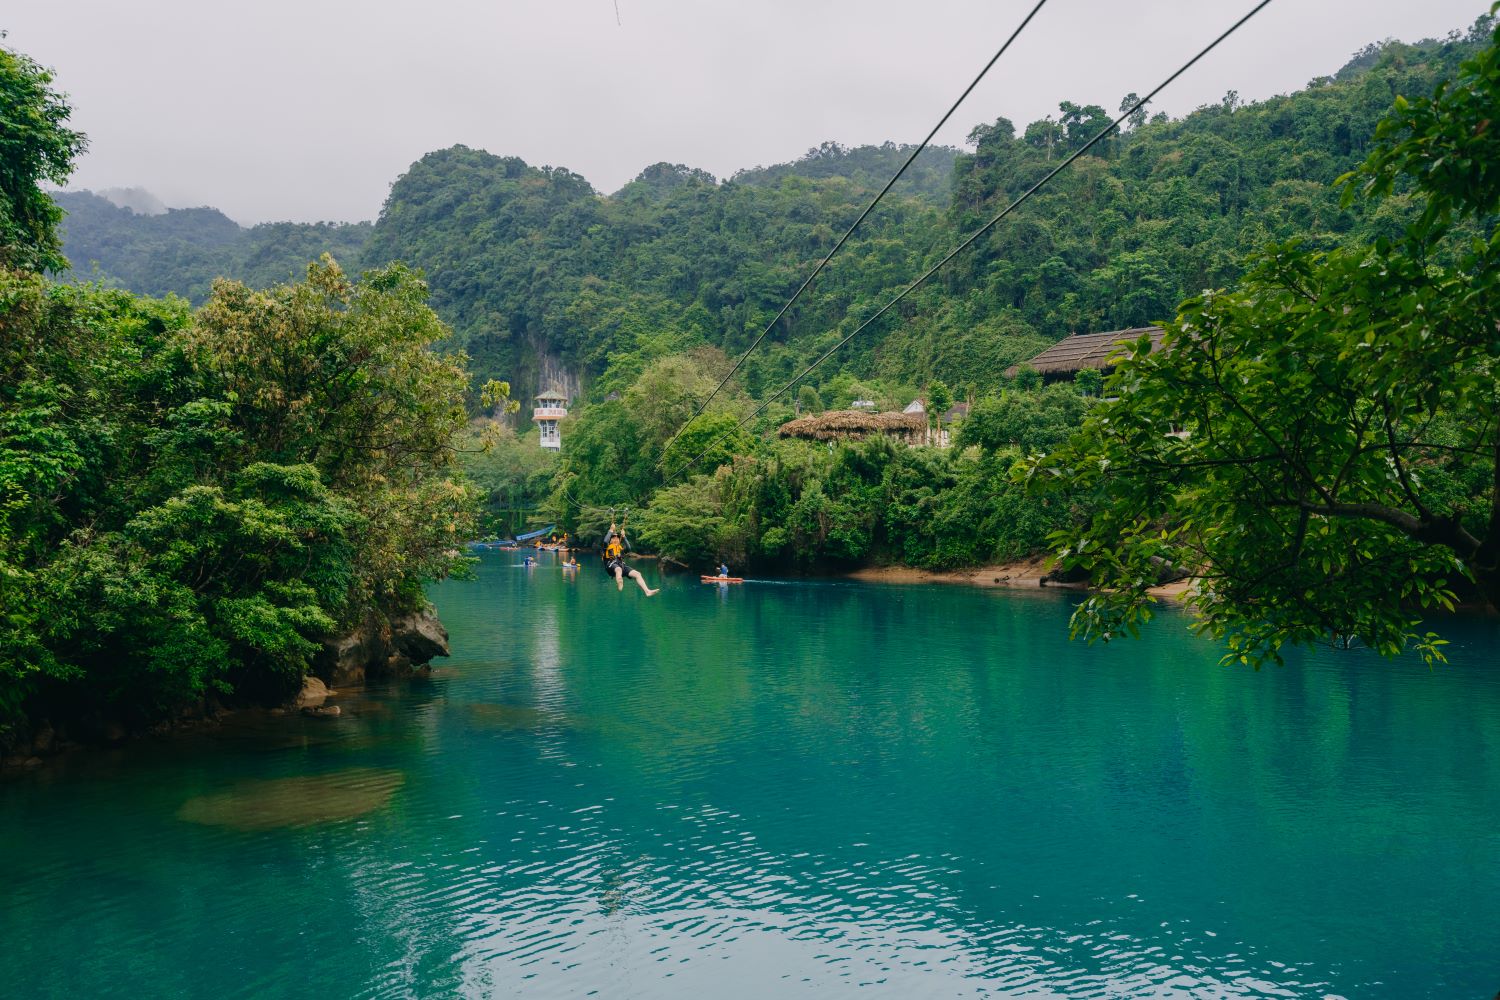 Trượt Zipline là hoạt động du lịch được du khách yêu thích nhất tại Sông Chày - Hang Tối.